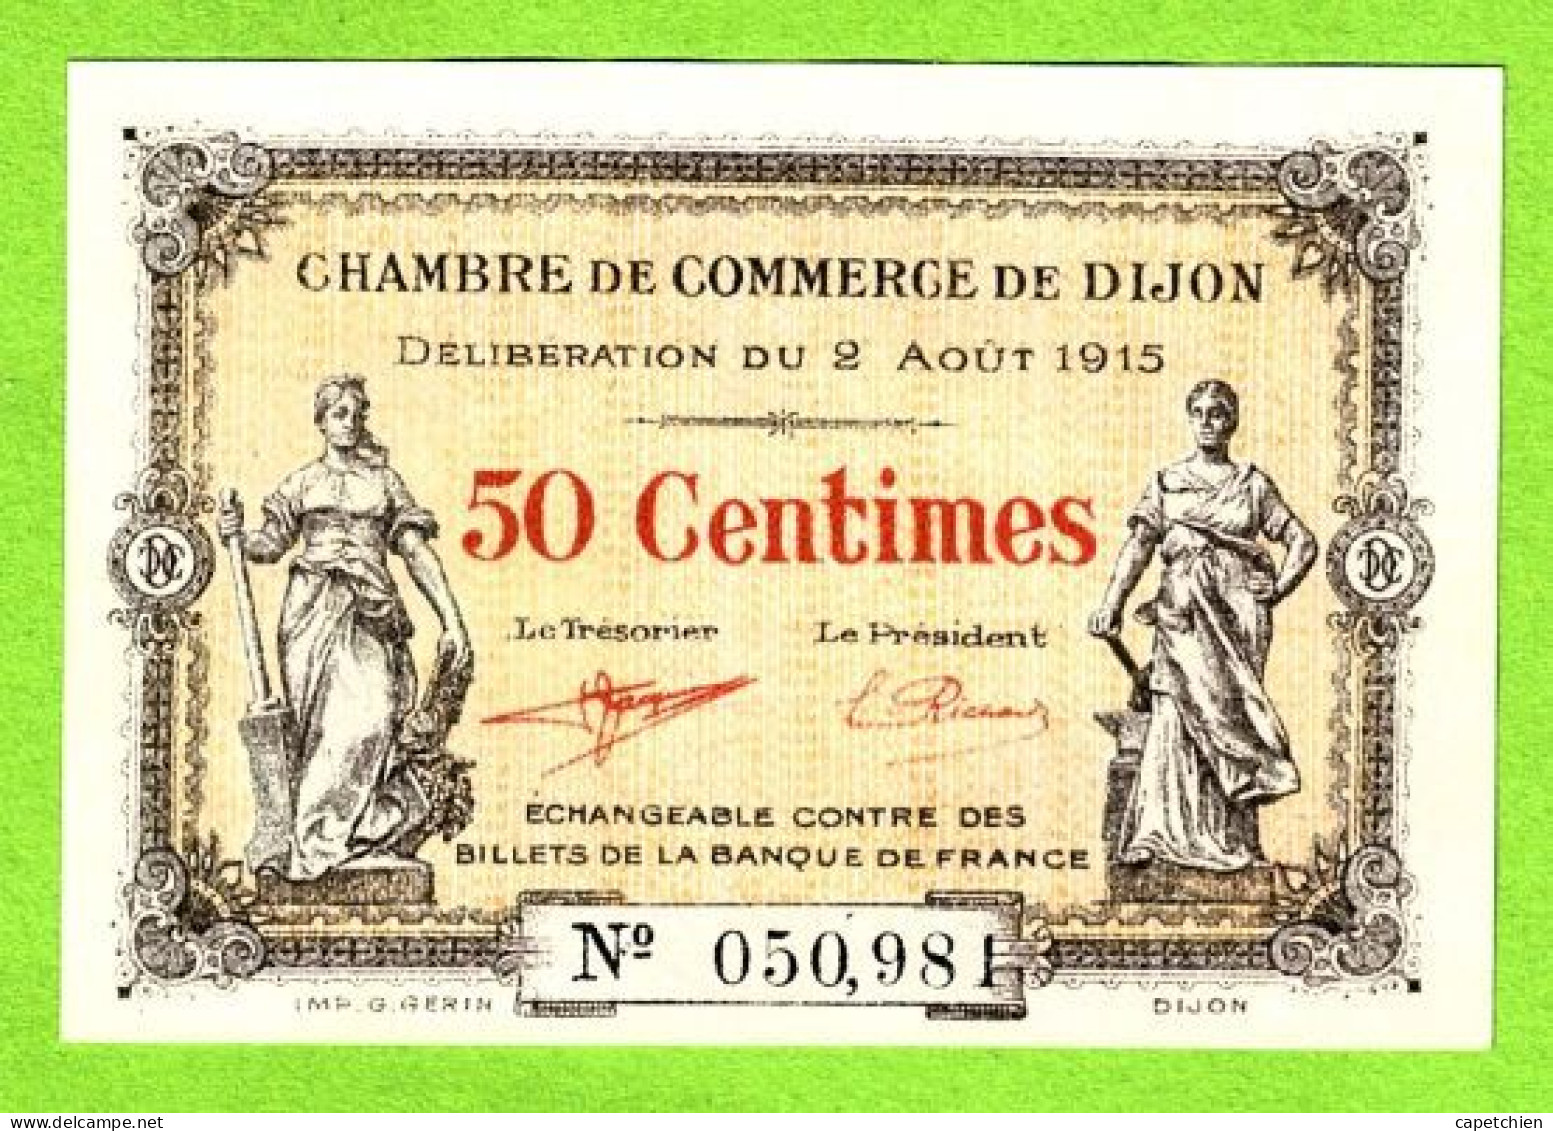 FRANCE / CHAMBRE De COMMERCE De DIJON/ 50 CENT. / 2 AOUT 1915 / N° 050,98 / SERIE - Chambre De Commerce